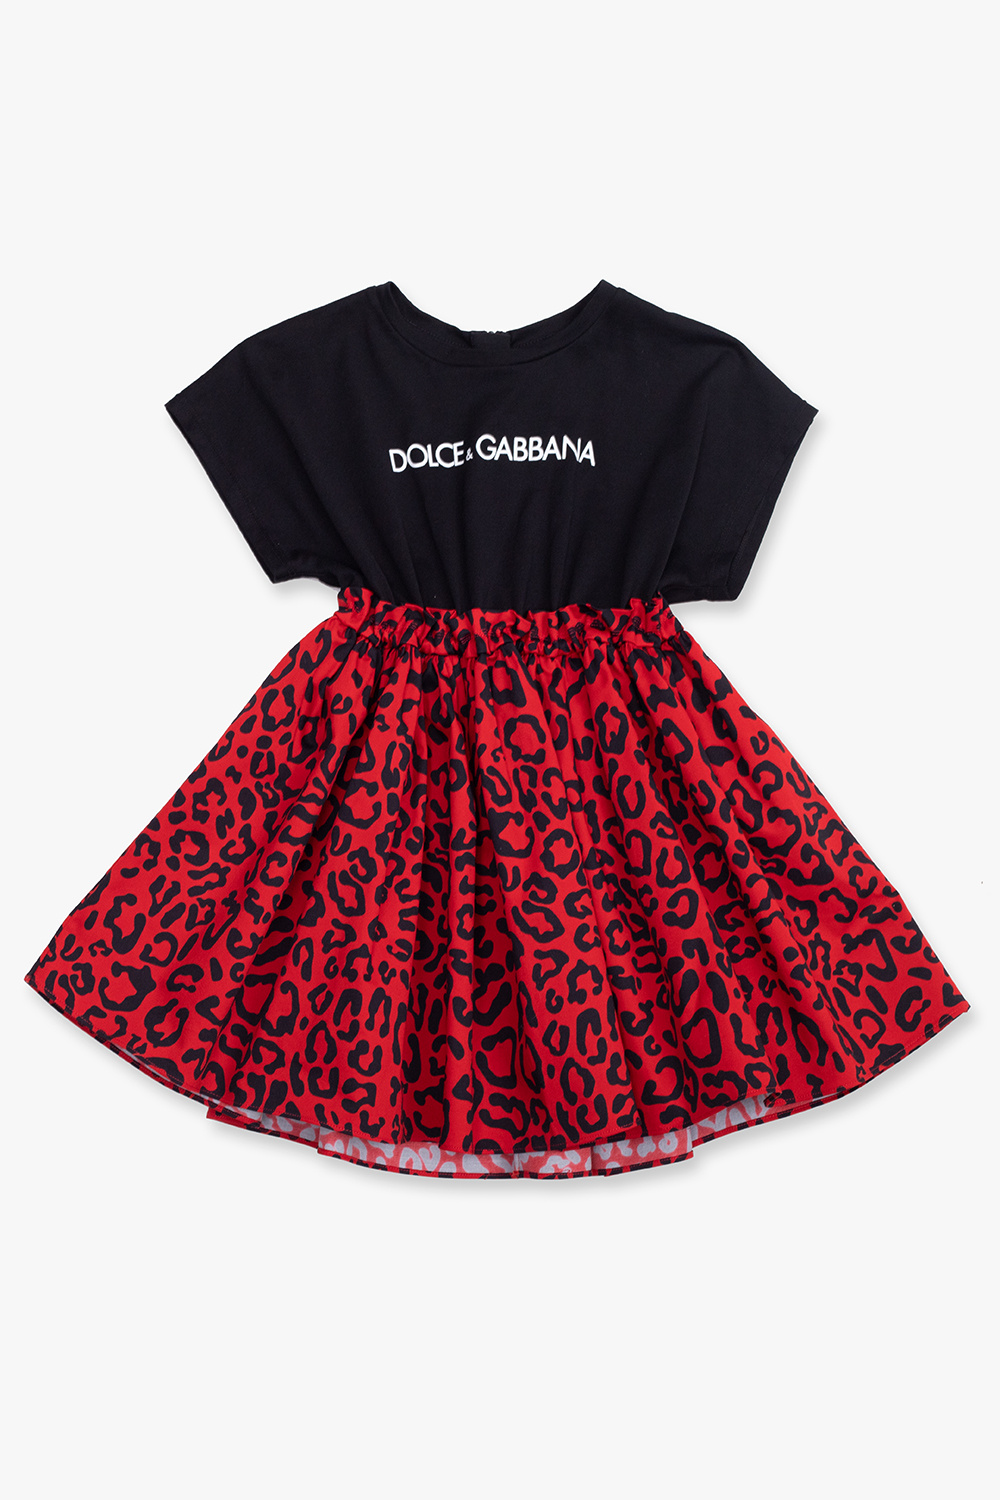 Dolce & Gabbana Kids dolce gabbana logo embroidered t shirt item